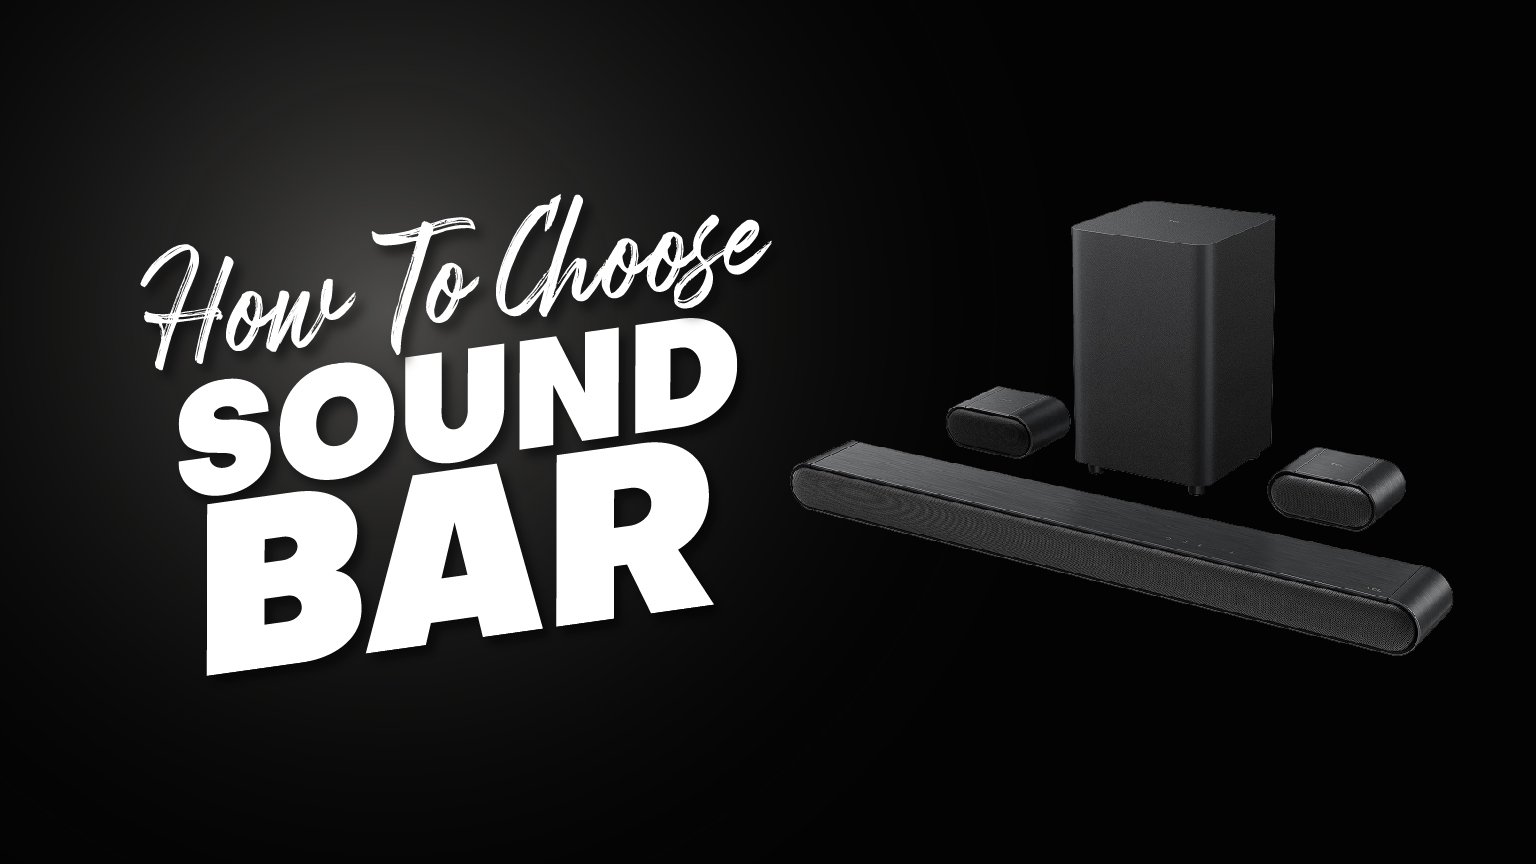 How To Choose A Sound bar